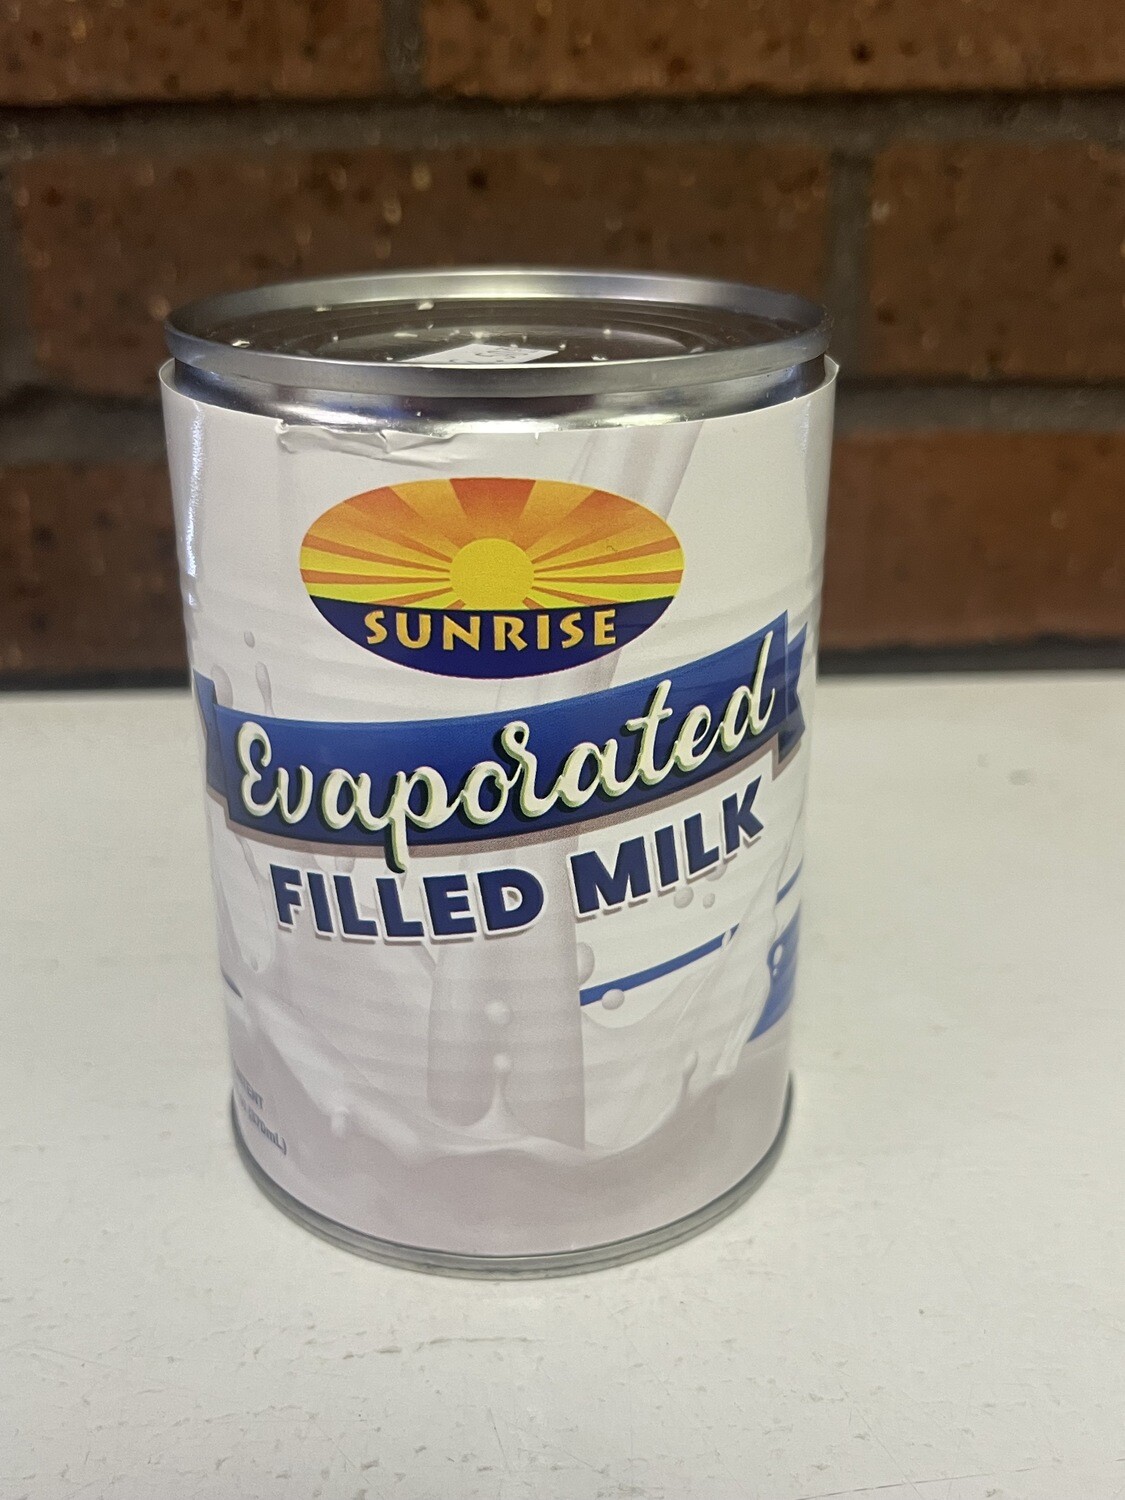 Sunrise Evaporated Milk